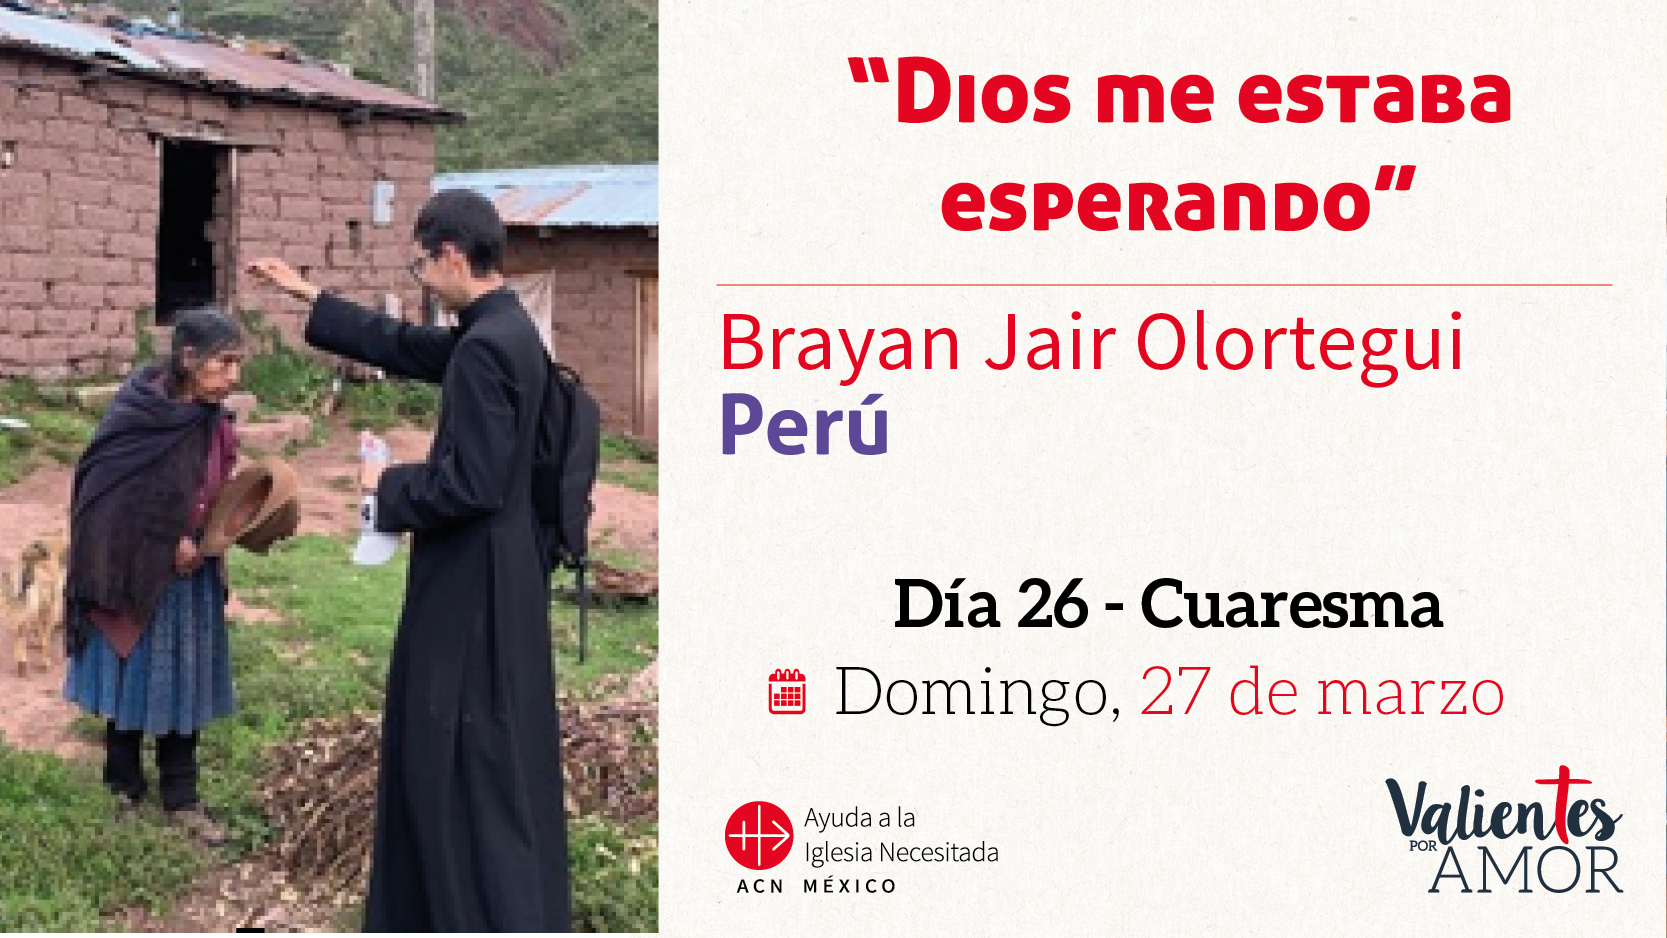 40 historias.- Perú: “Dios me estaba esperando”